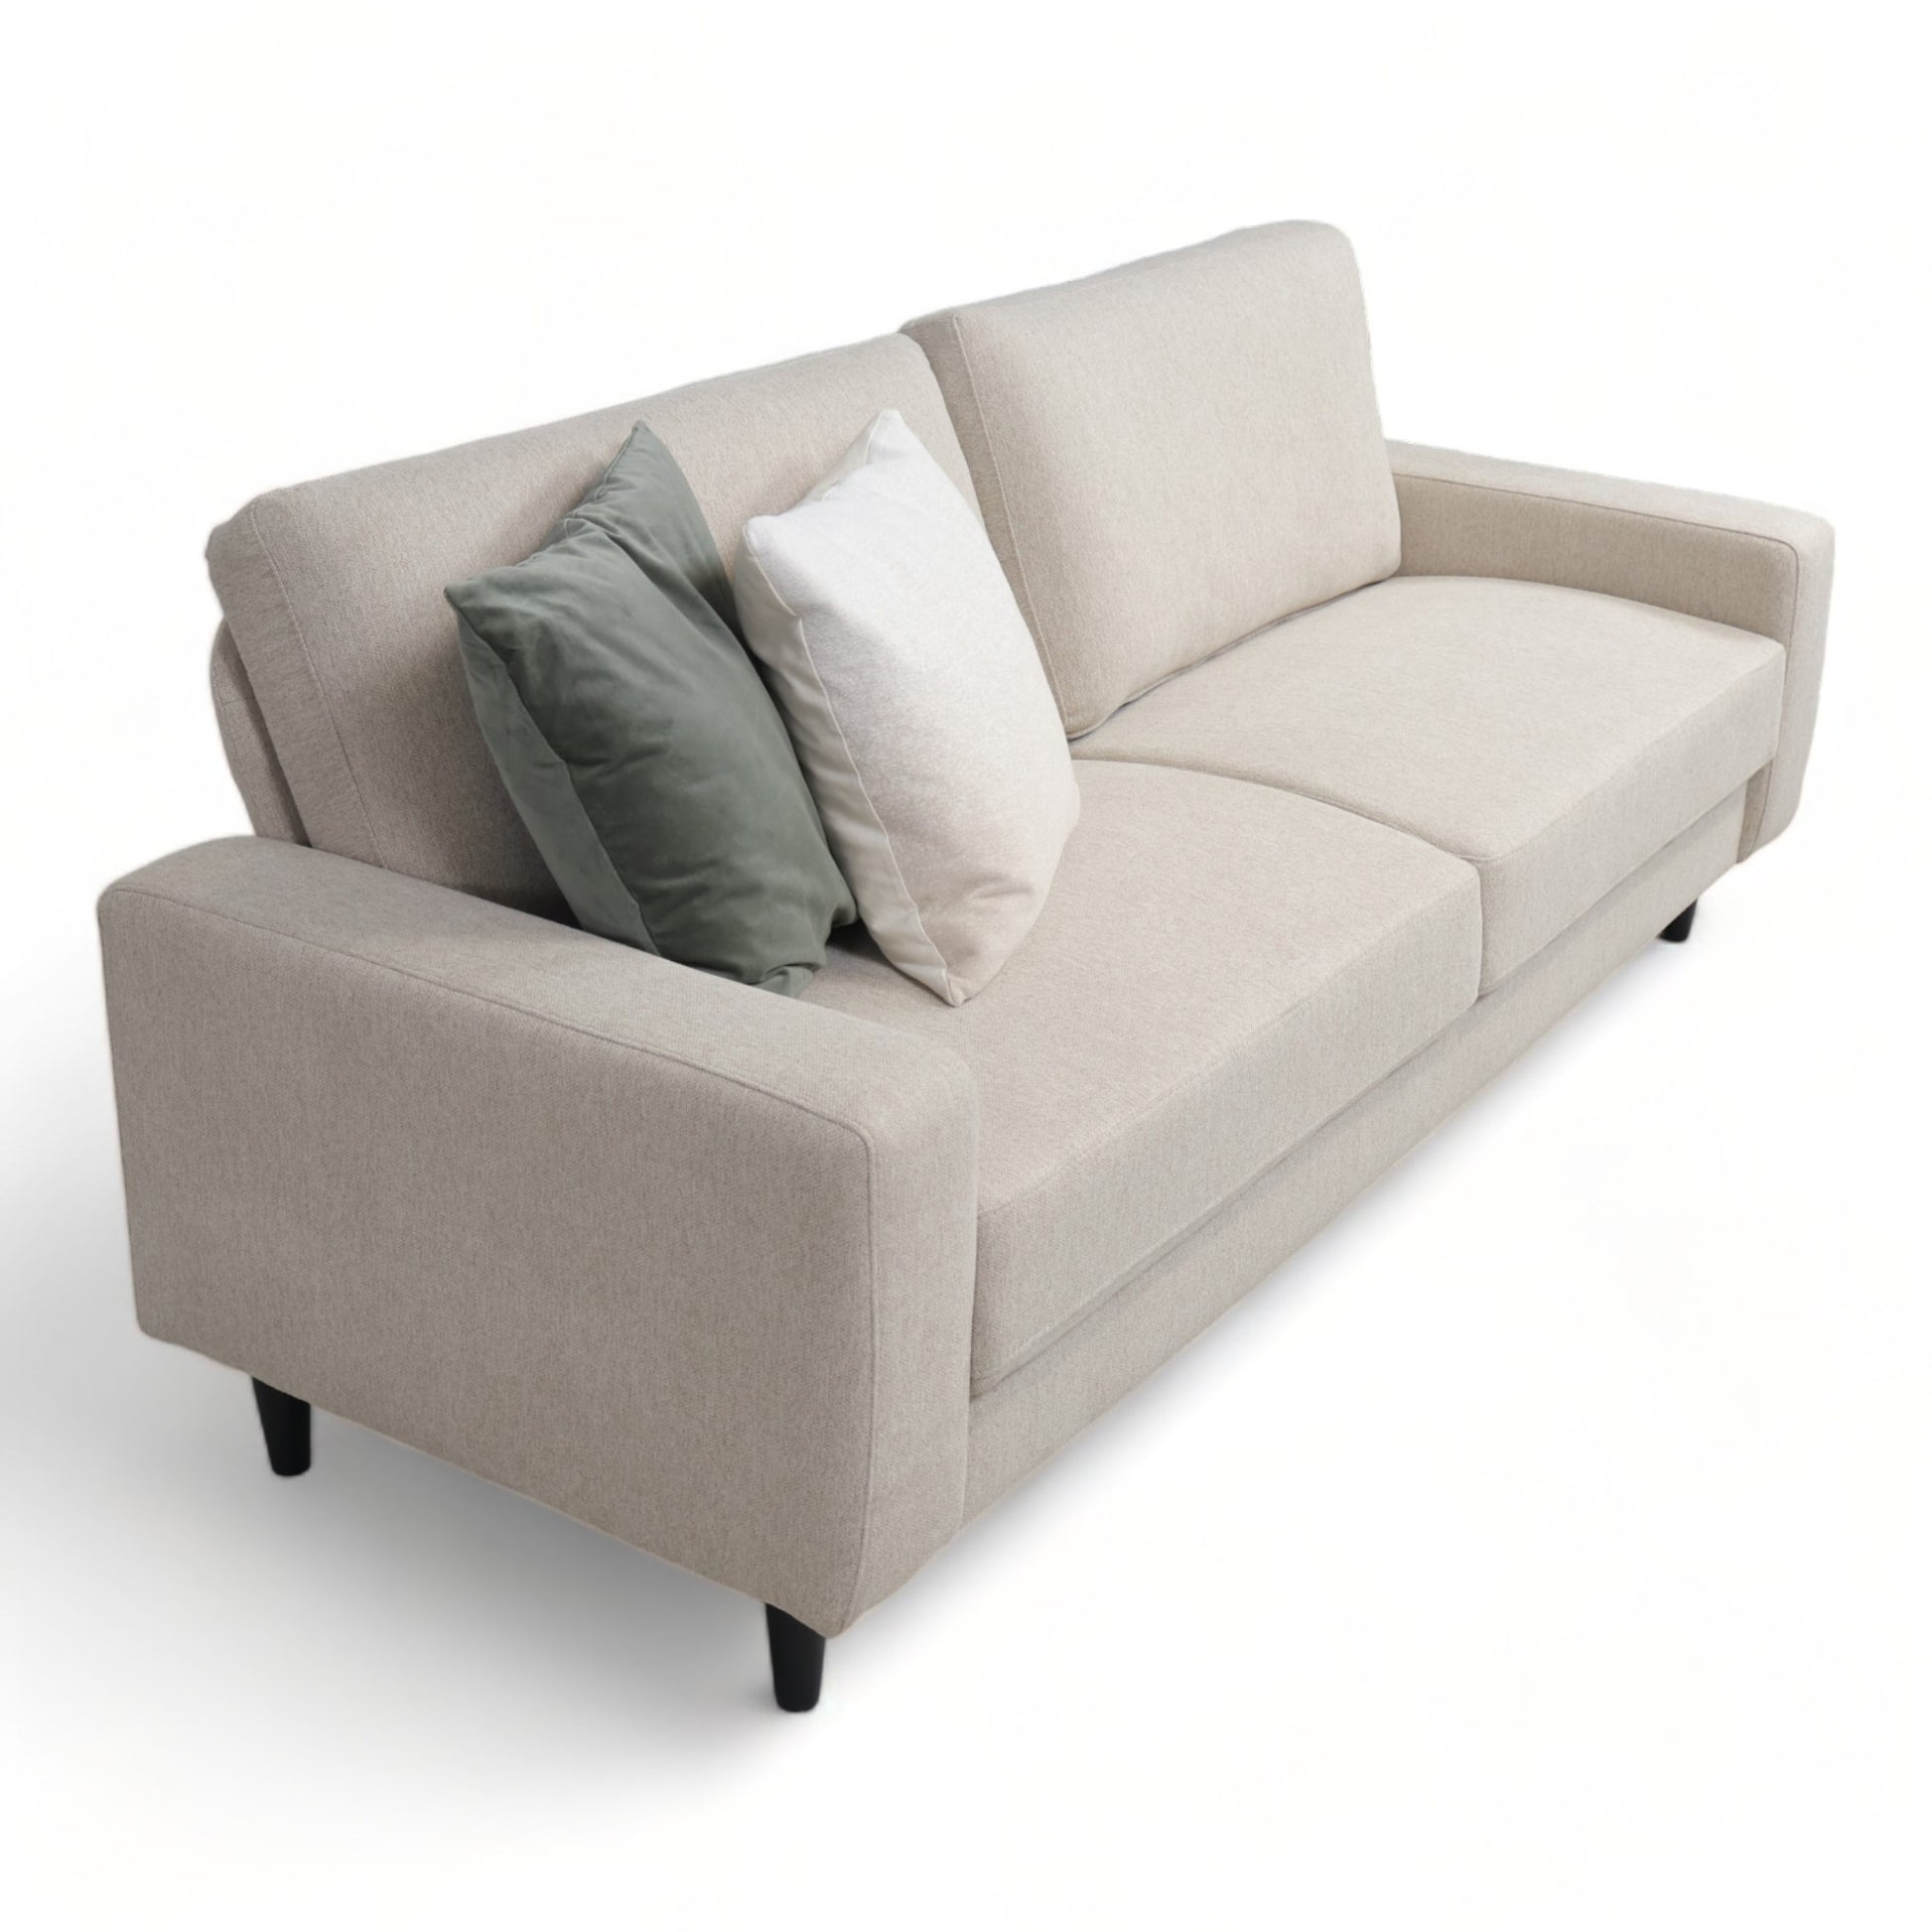 Nyrenset | Beige Etta 3-seter sofa fra A-Møbler